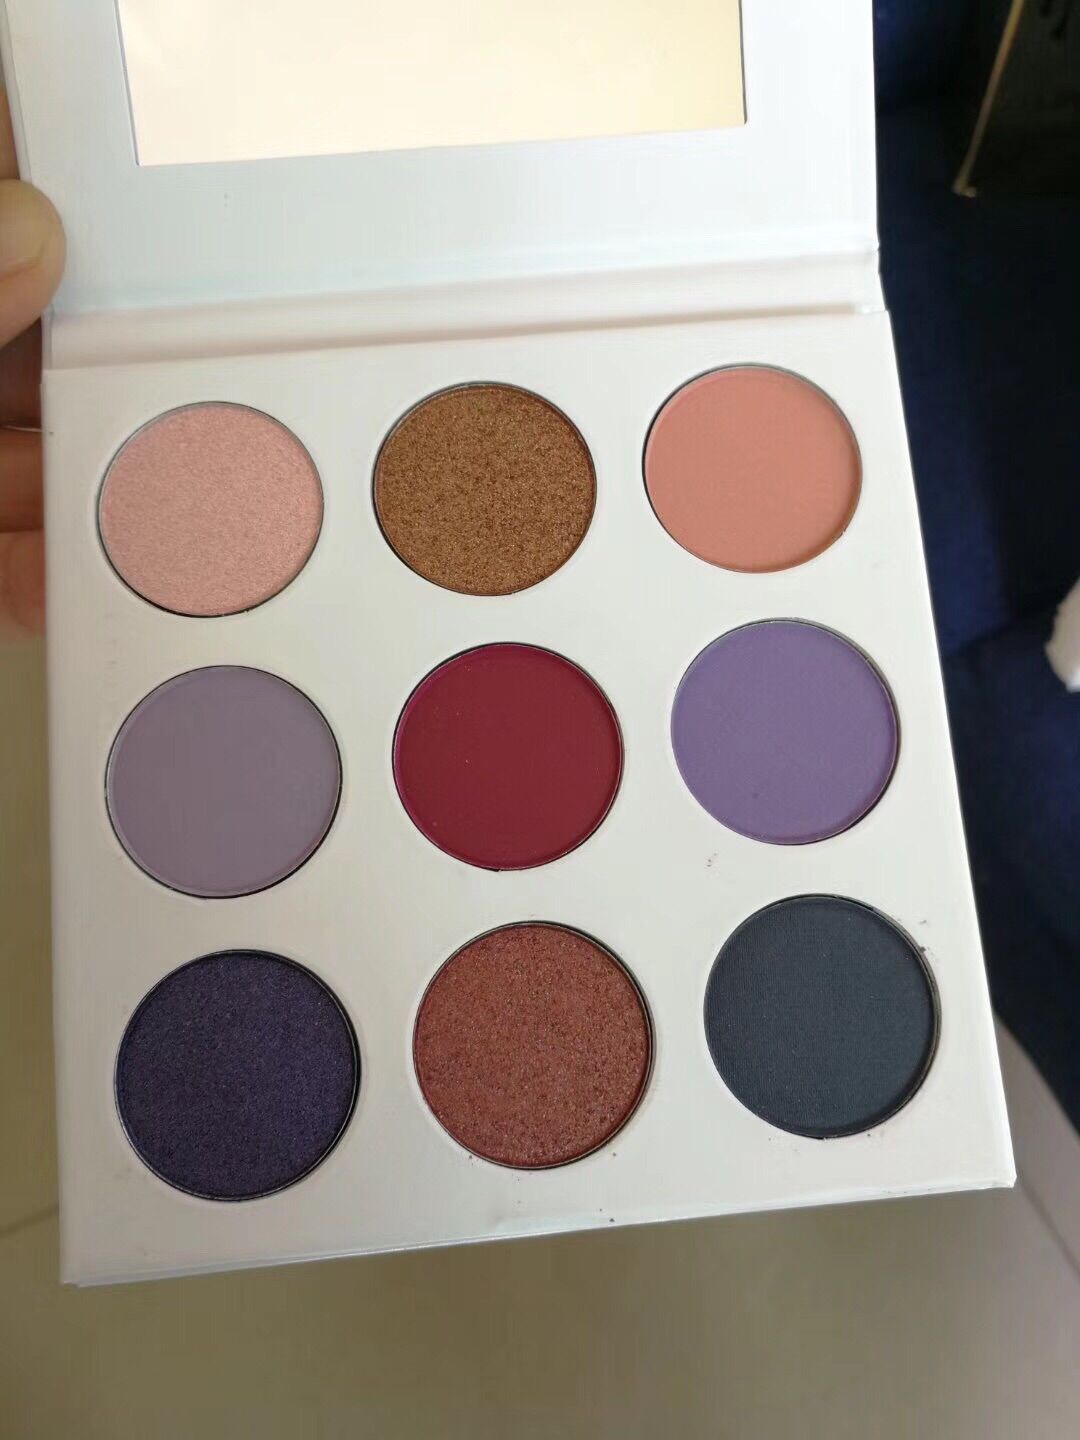 The Purple palette